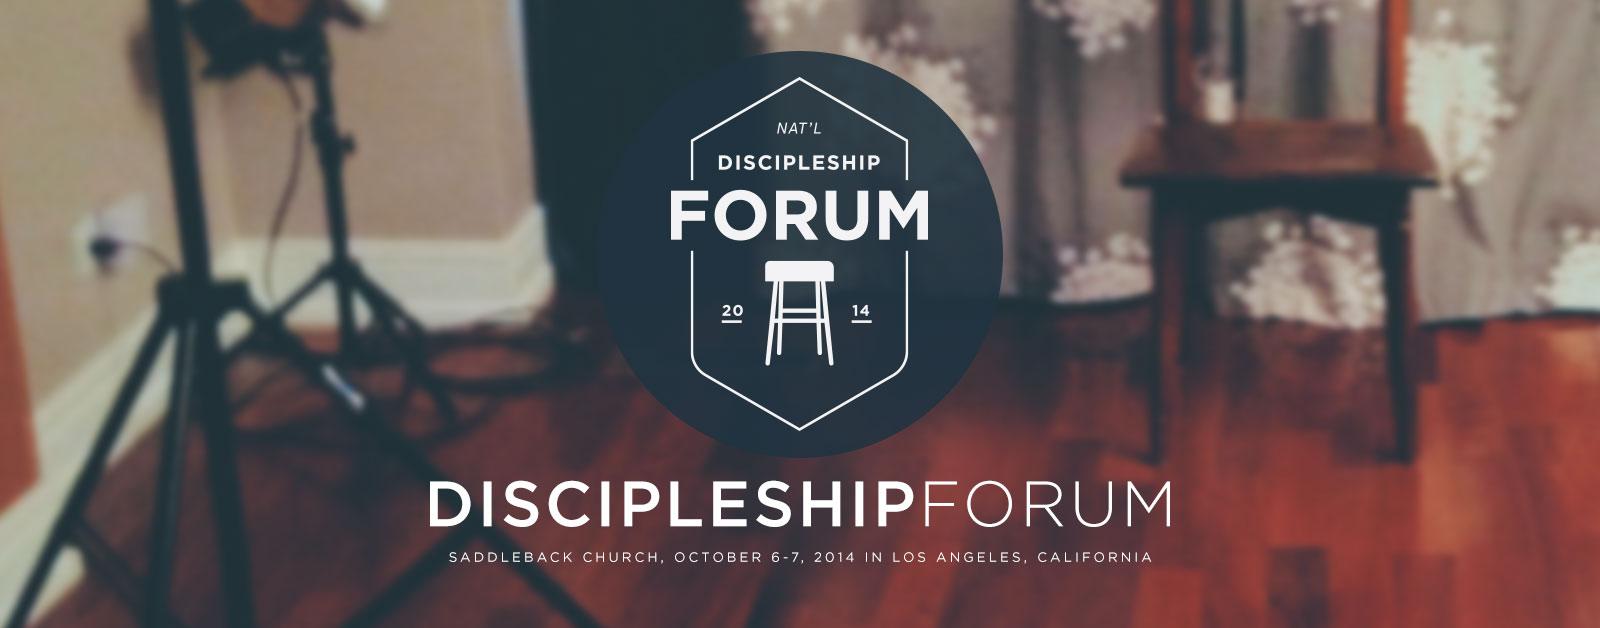 discipleship.org forums